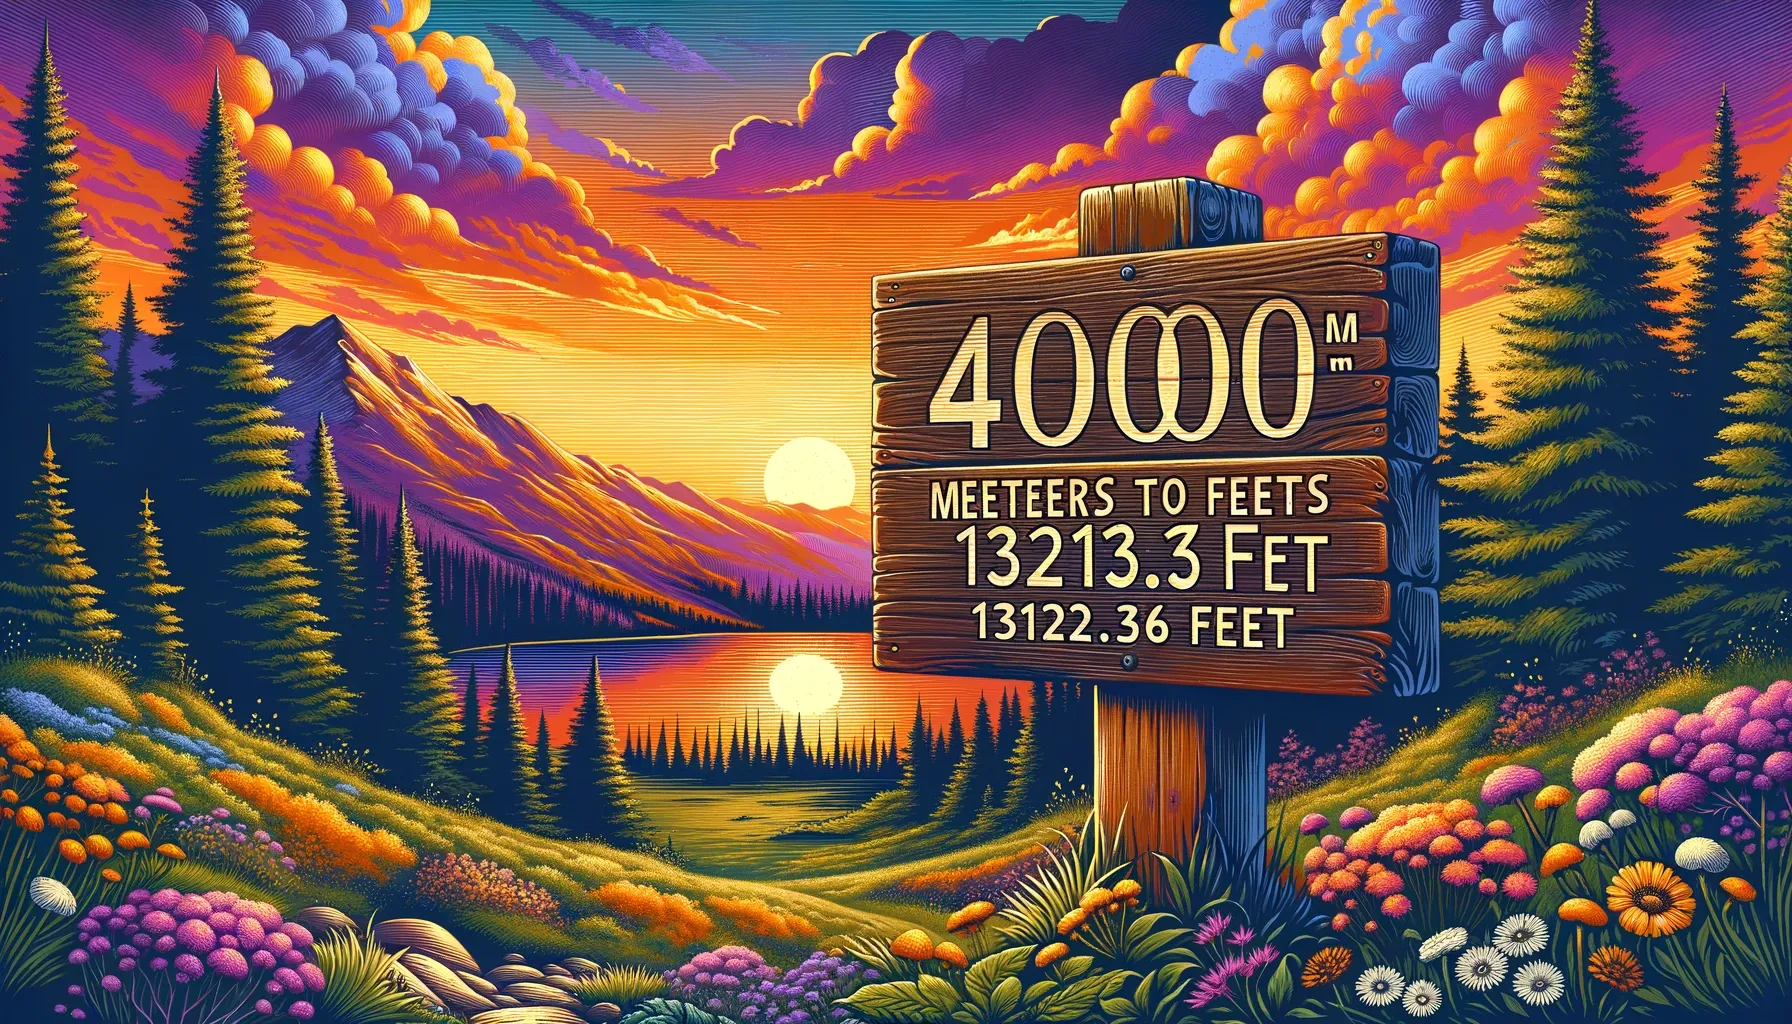 4000 Meters to Feet written on wood board